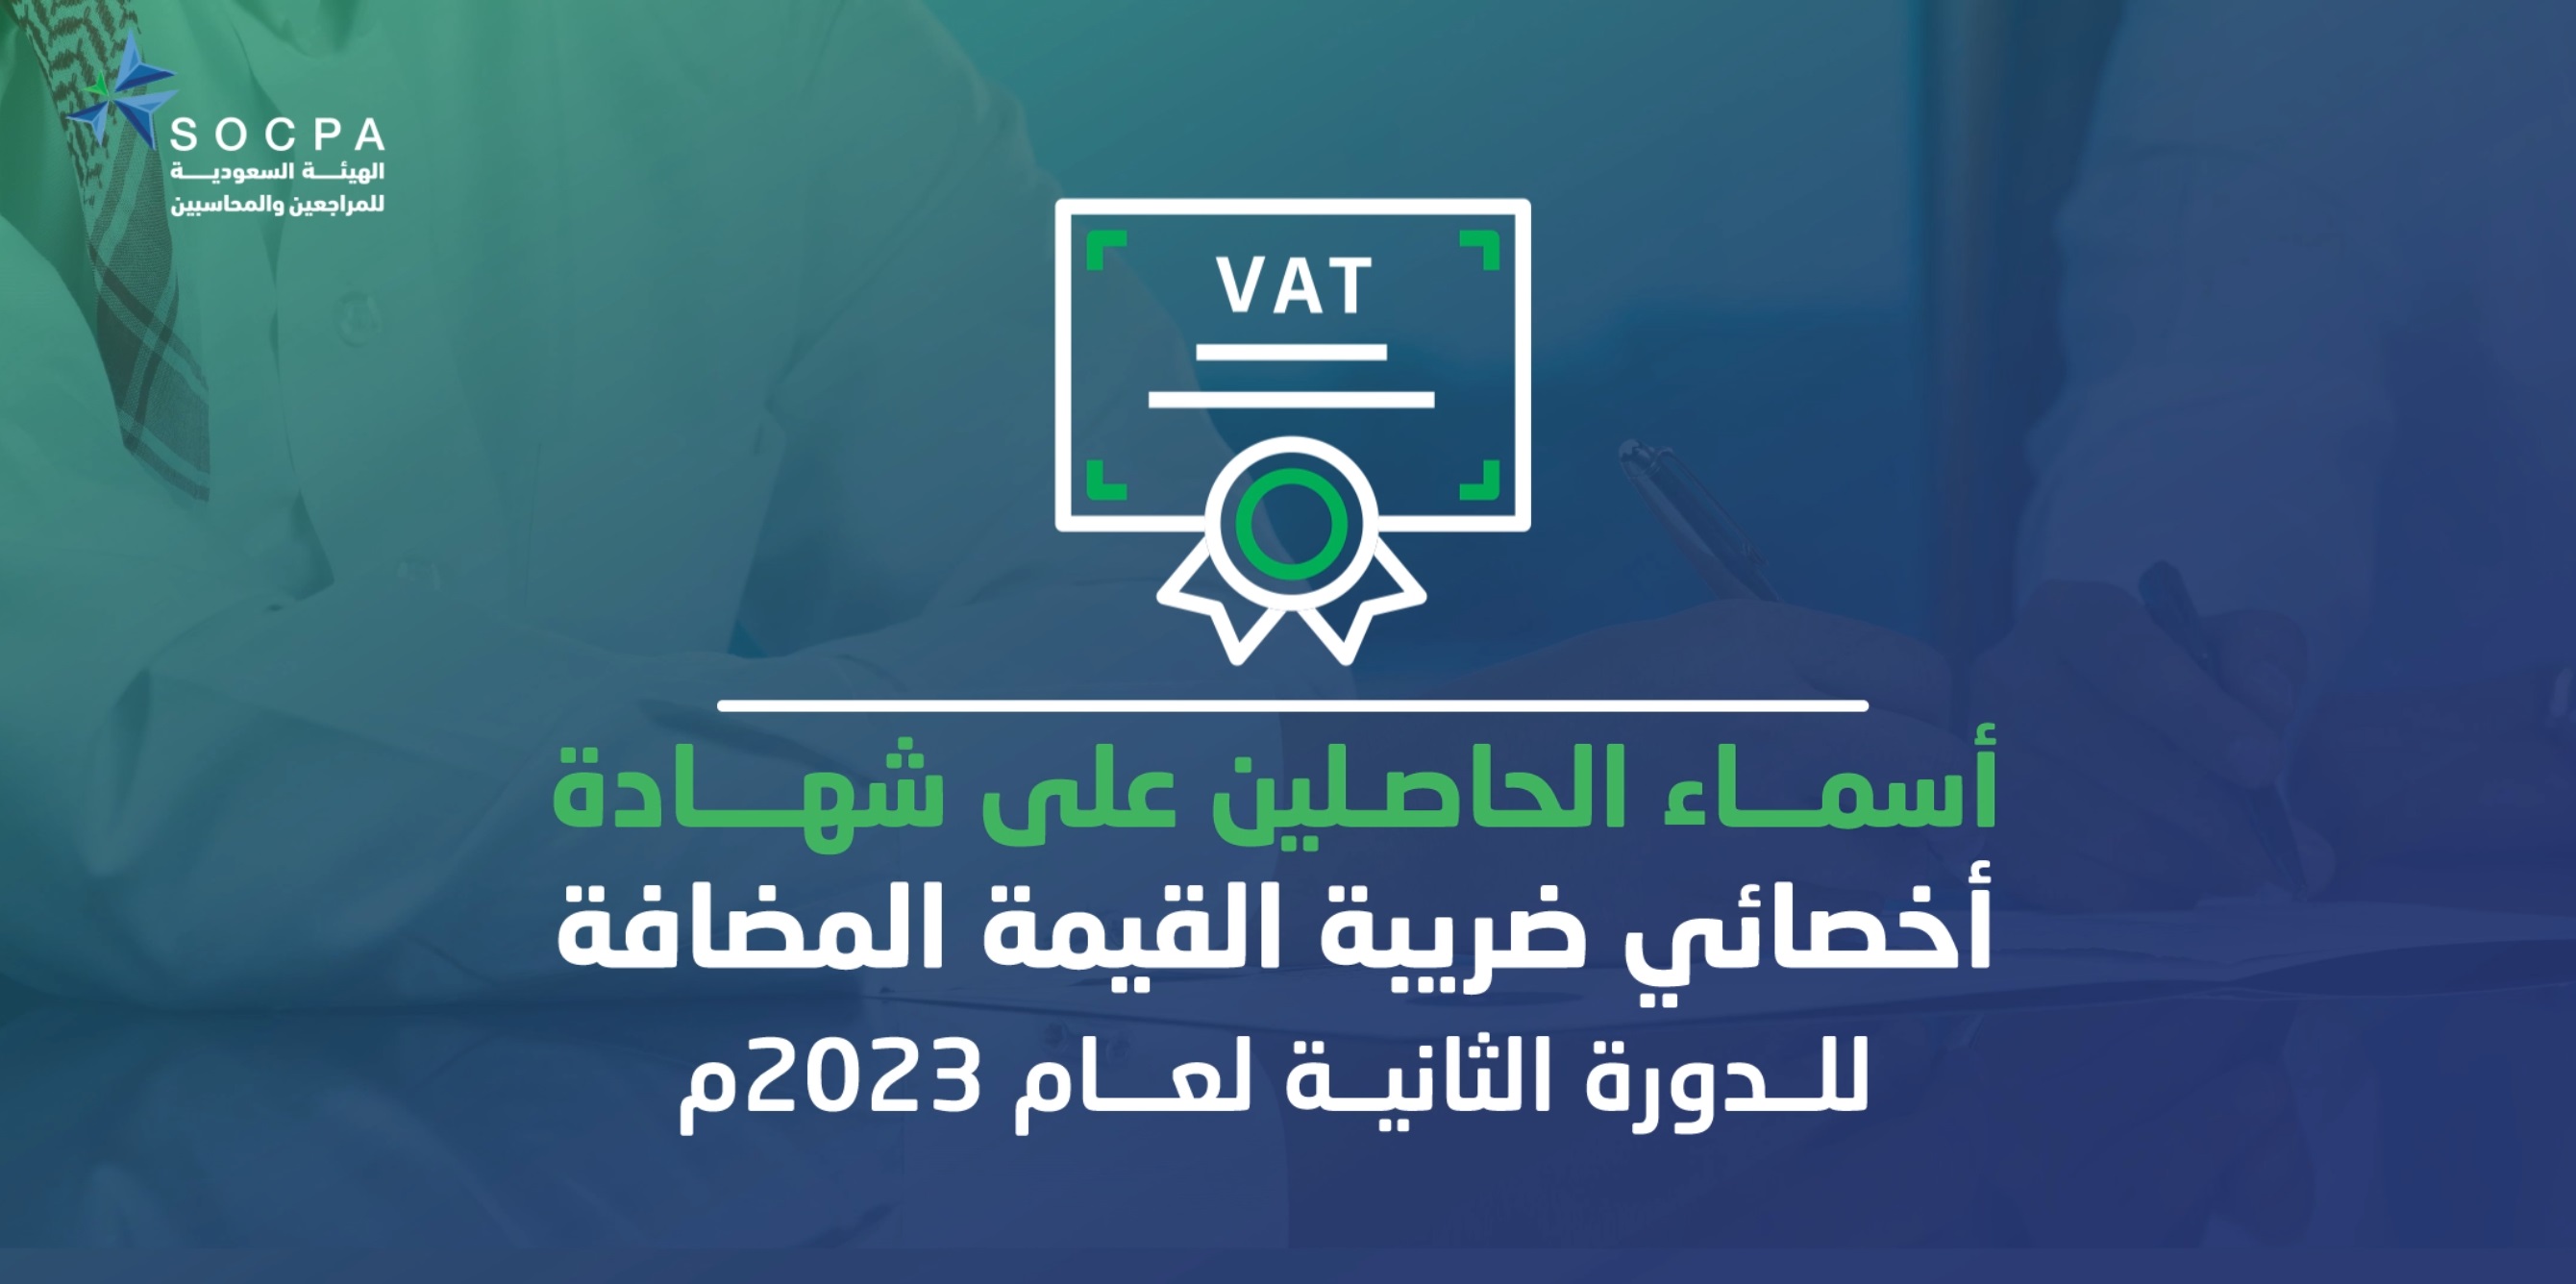 الهيئة تنشر أسماء الحاصلين على شهادة أخصائي ضريبة القيمة المضافة